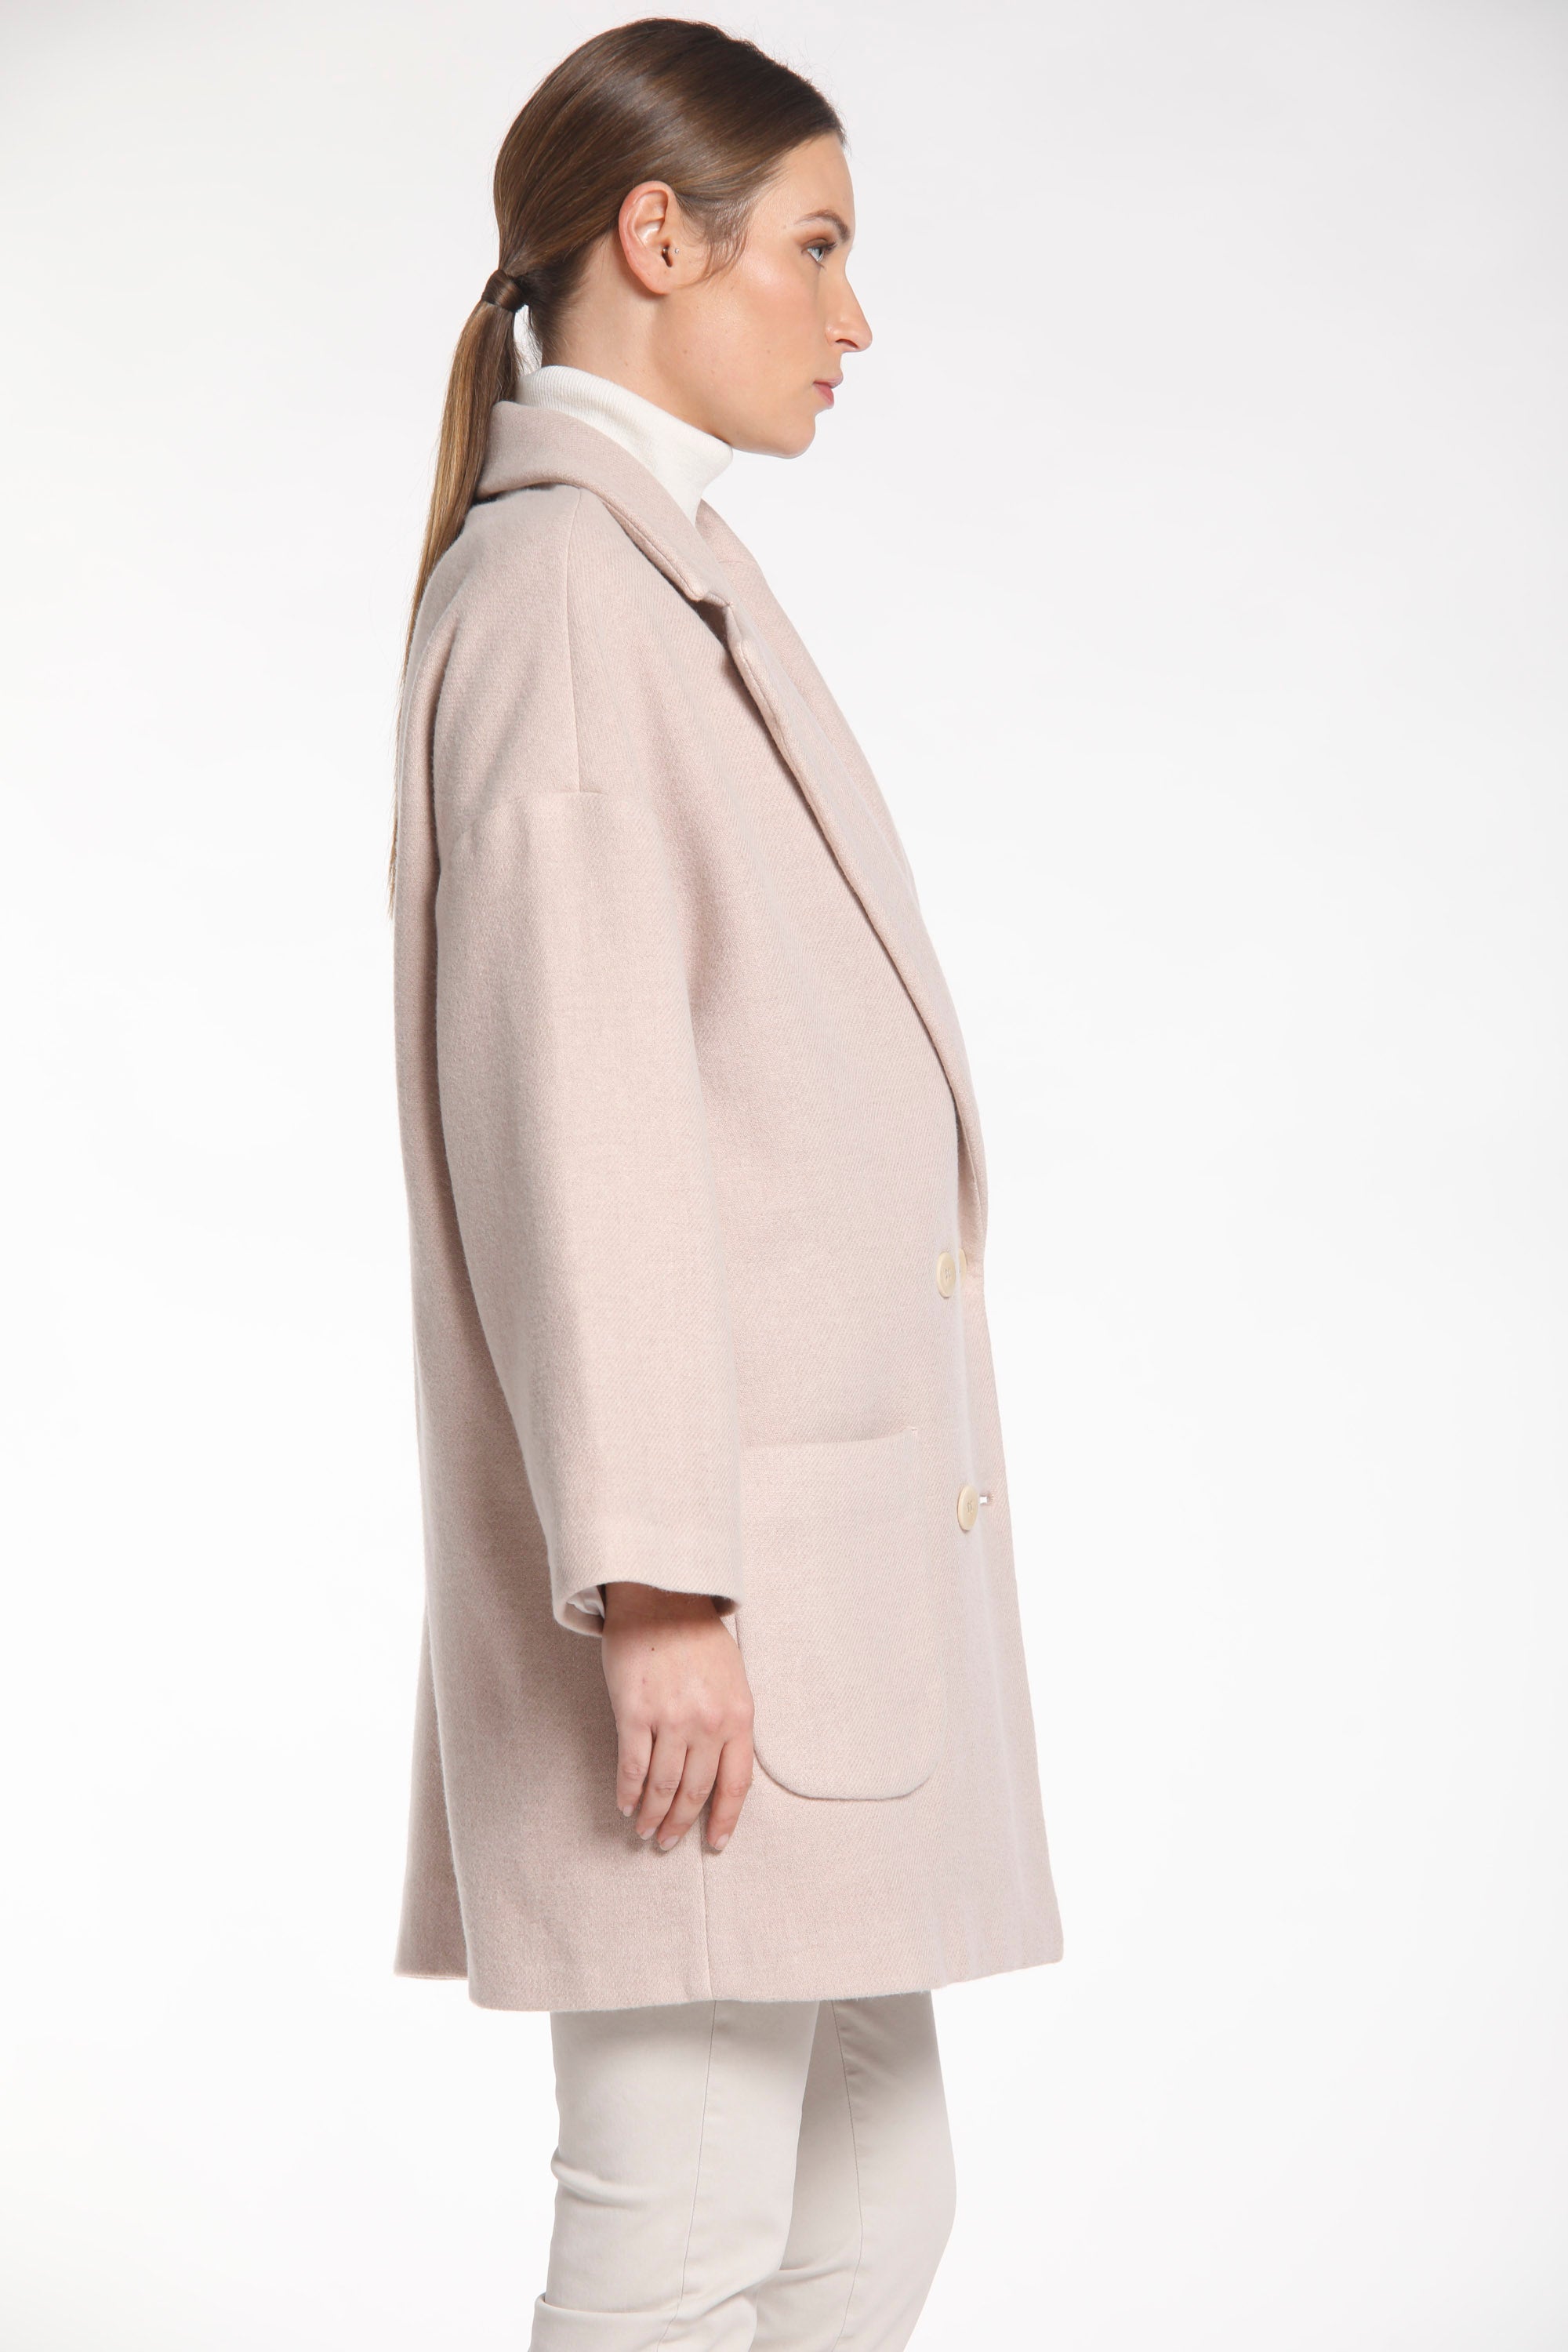 Image 4 d'un manteau femme en laine rose clair modèle Noemi par Mason's.